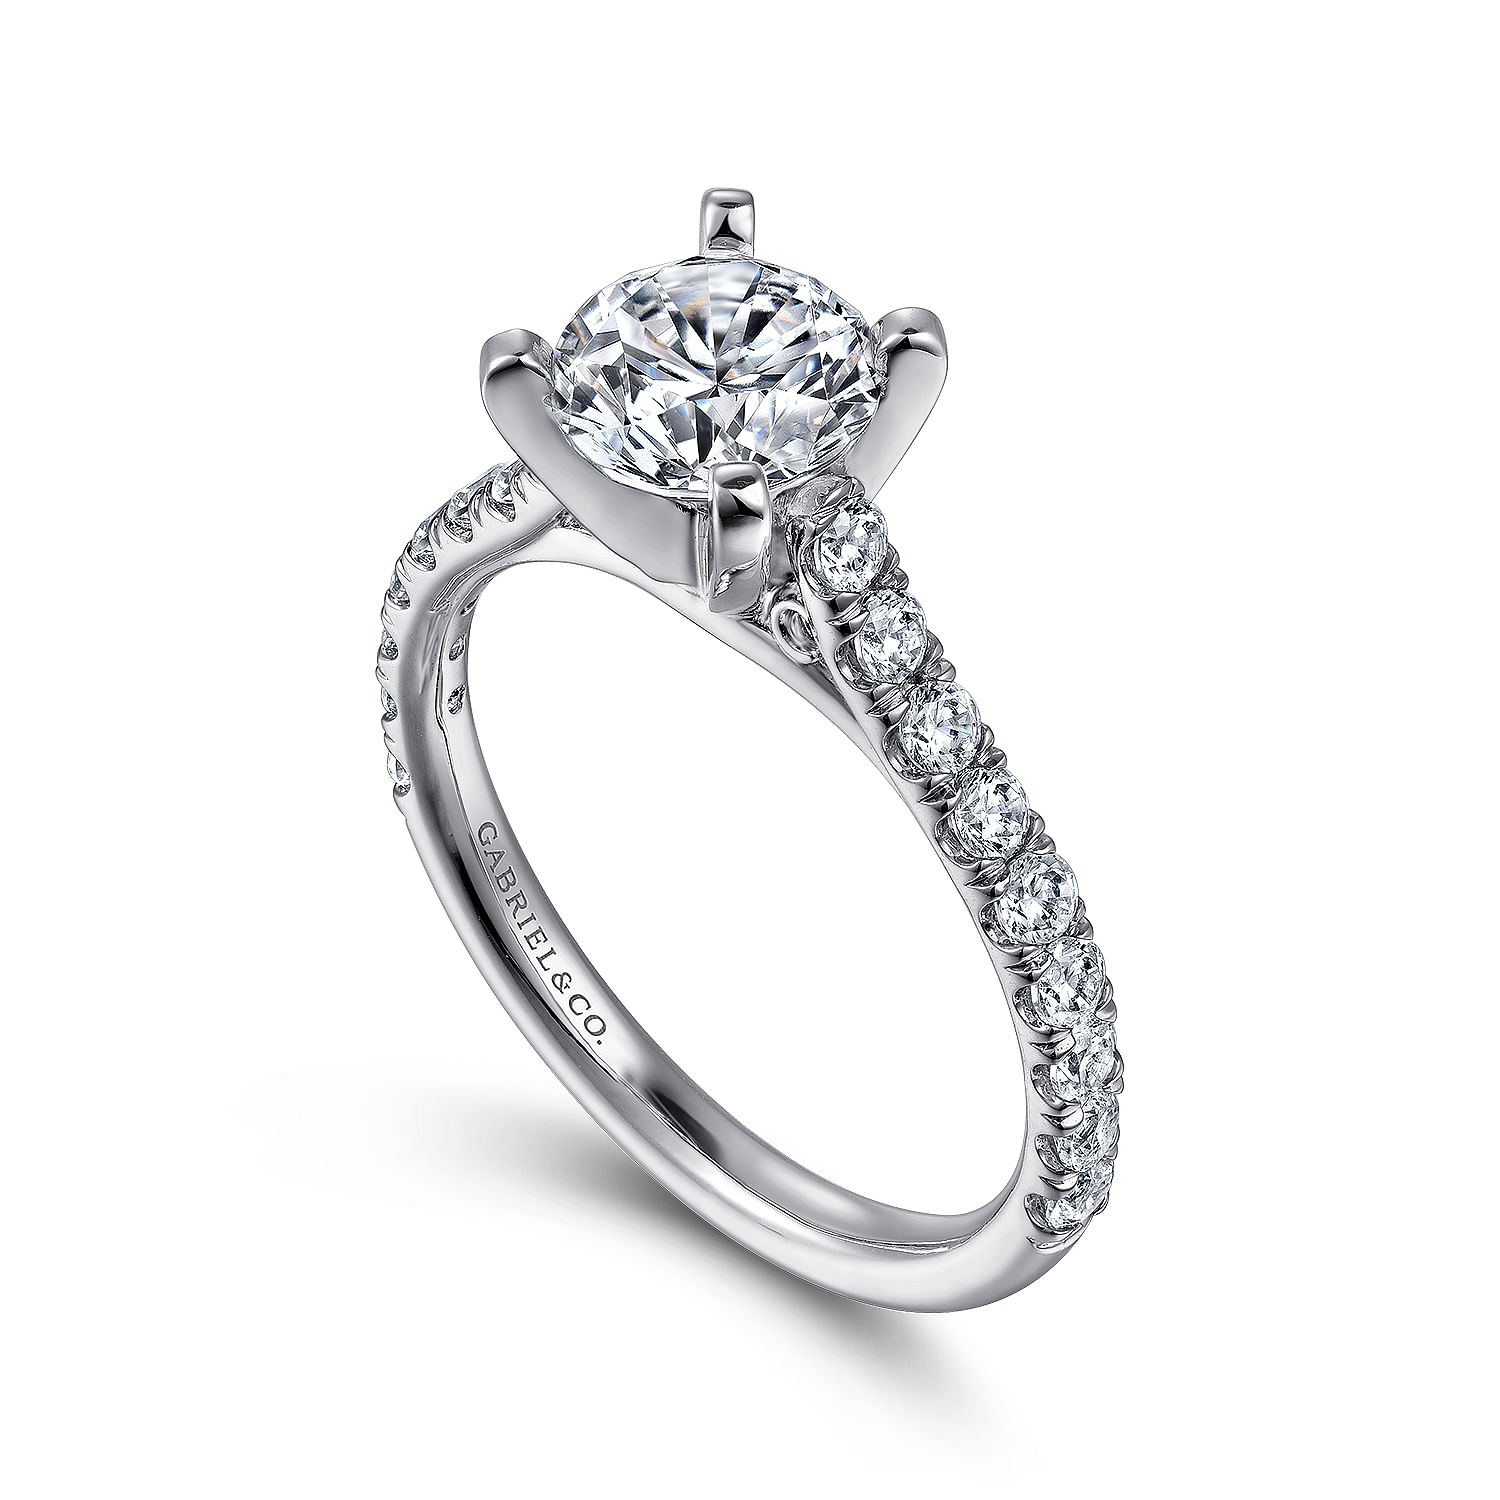 Erica - 14K White Gold Round Diamond Engagement Ring